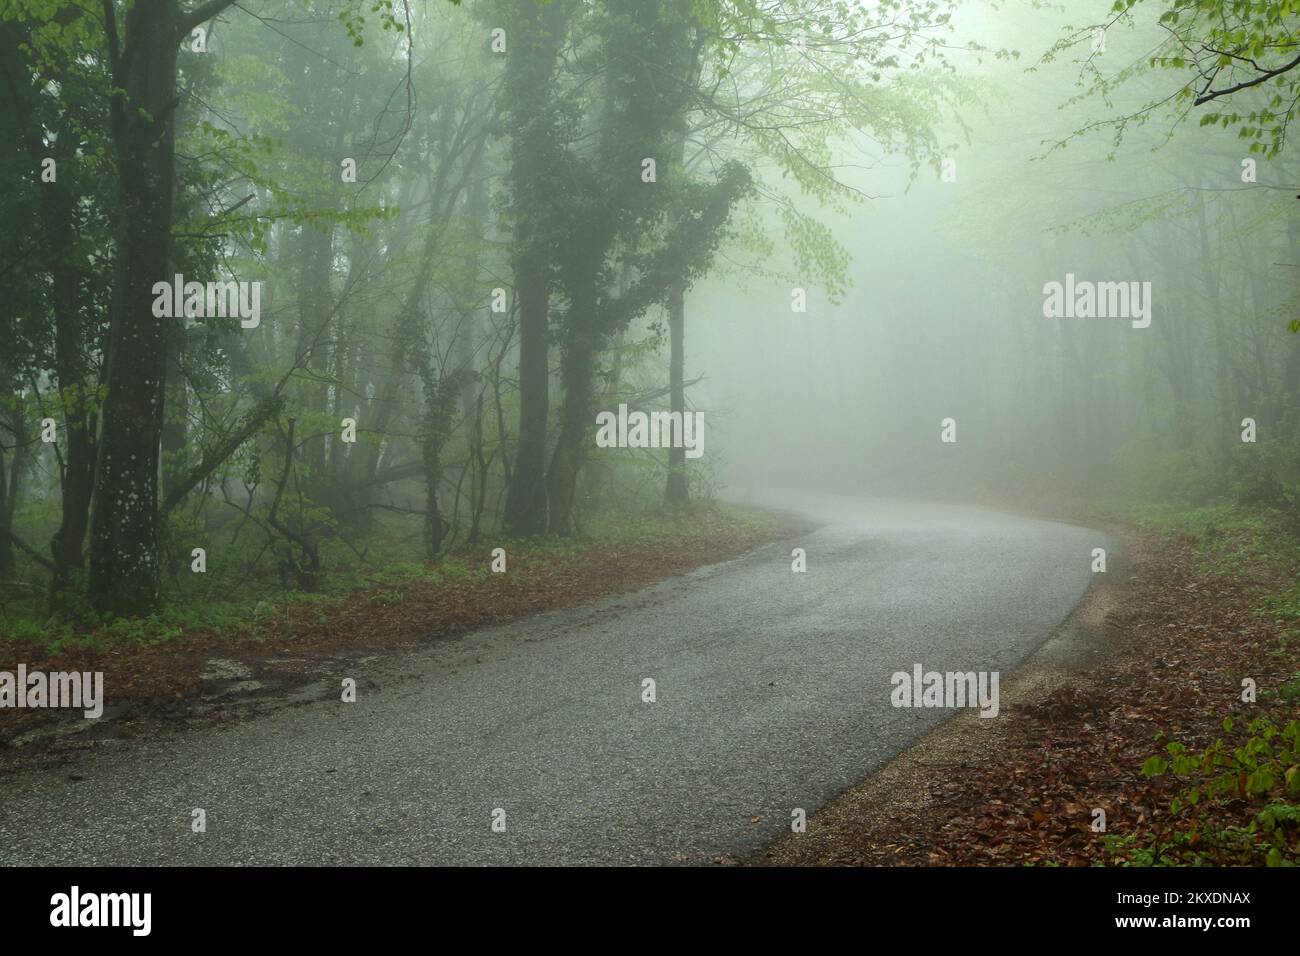 La foto della stretta strada asfaltata bagnata nella foresta durante la mattina piovosa. Condizioni di guida difficili e pericolose. Foto Stock